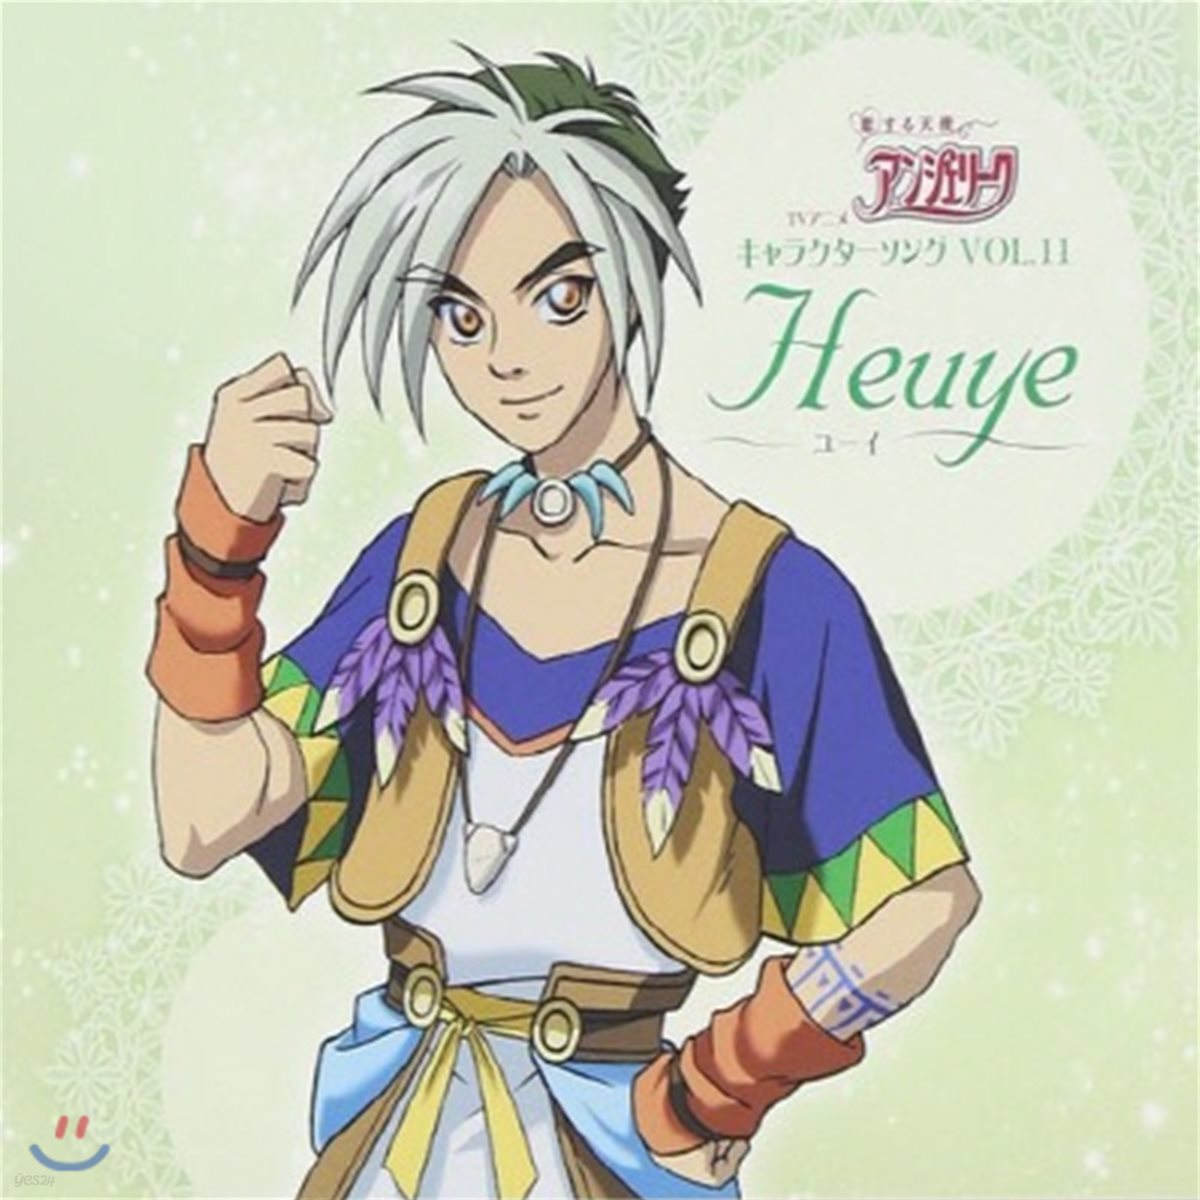 [중고] O.S.T. / Angelique - Vol. 11 Heuye (일본반/Single/lacm4309)